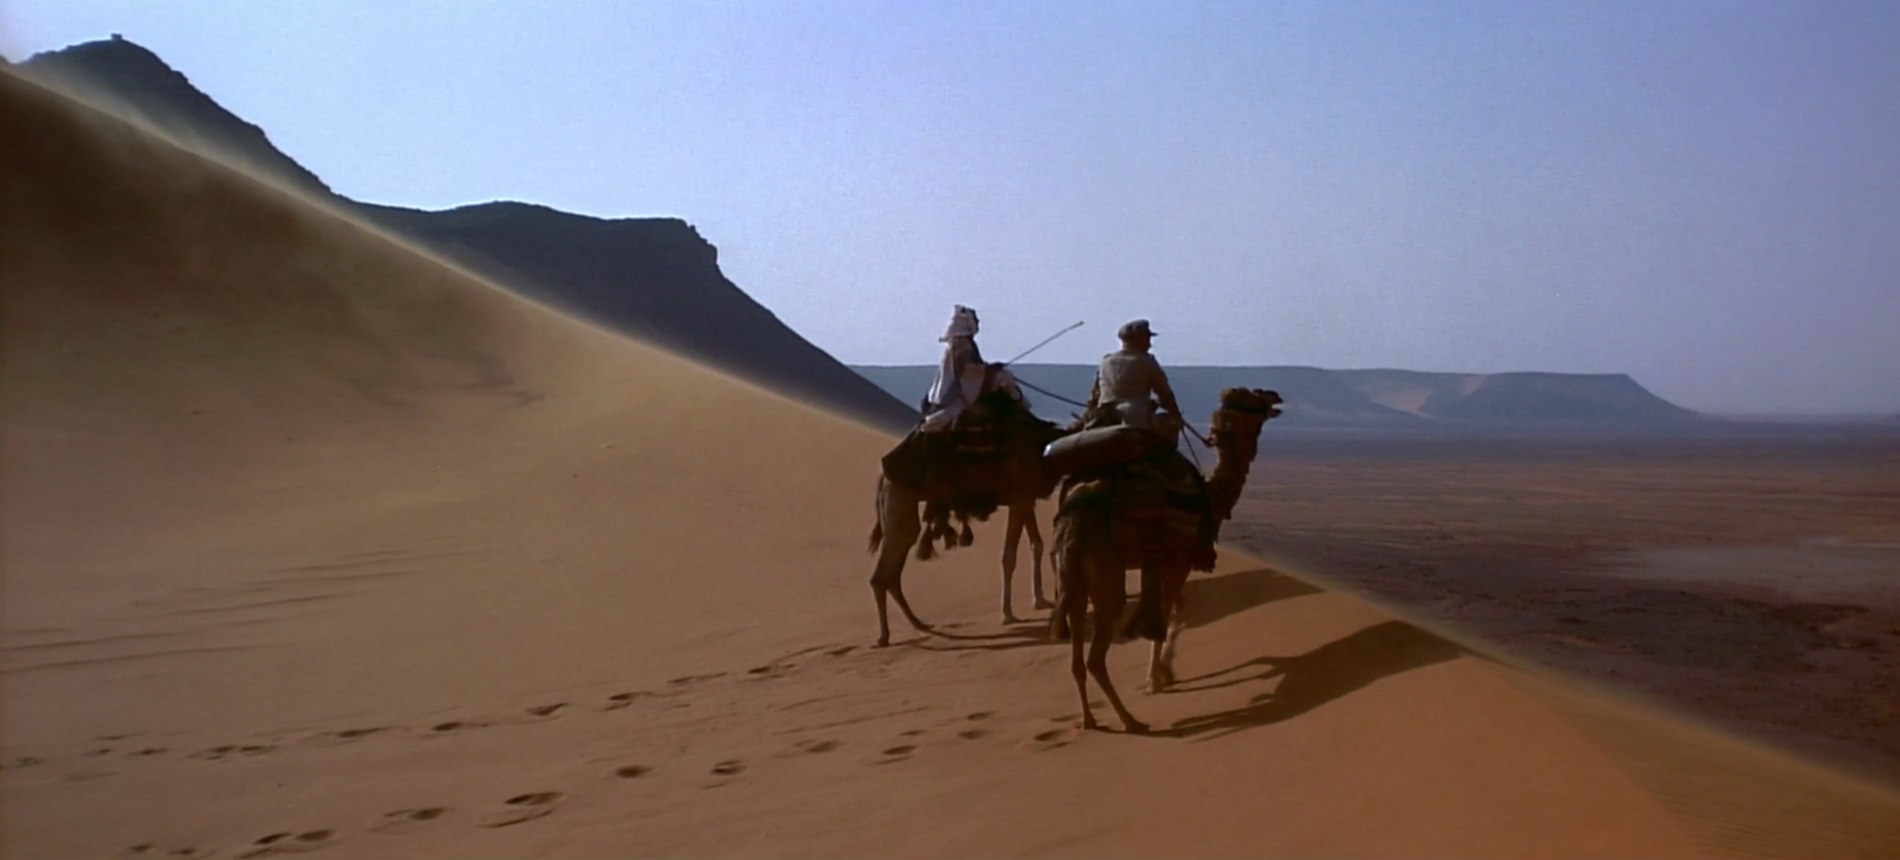 Cinéma Lawrence d'Arabie / Lawrence of Arabia par David Lean (1962) Avec Peter O'Toole, Omar Sharif, Alec Guinness, Anthony Quinn — Musique de Maurice Jarre